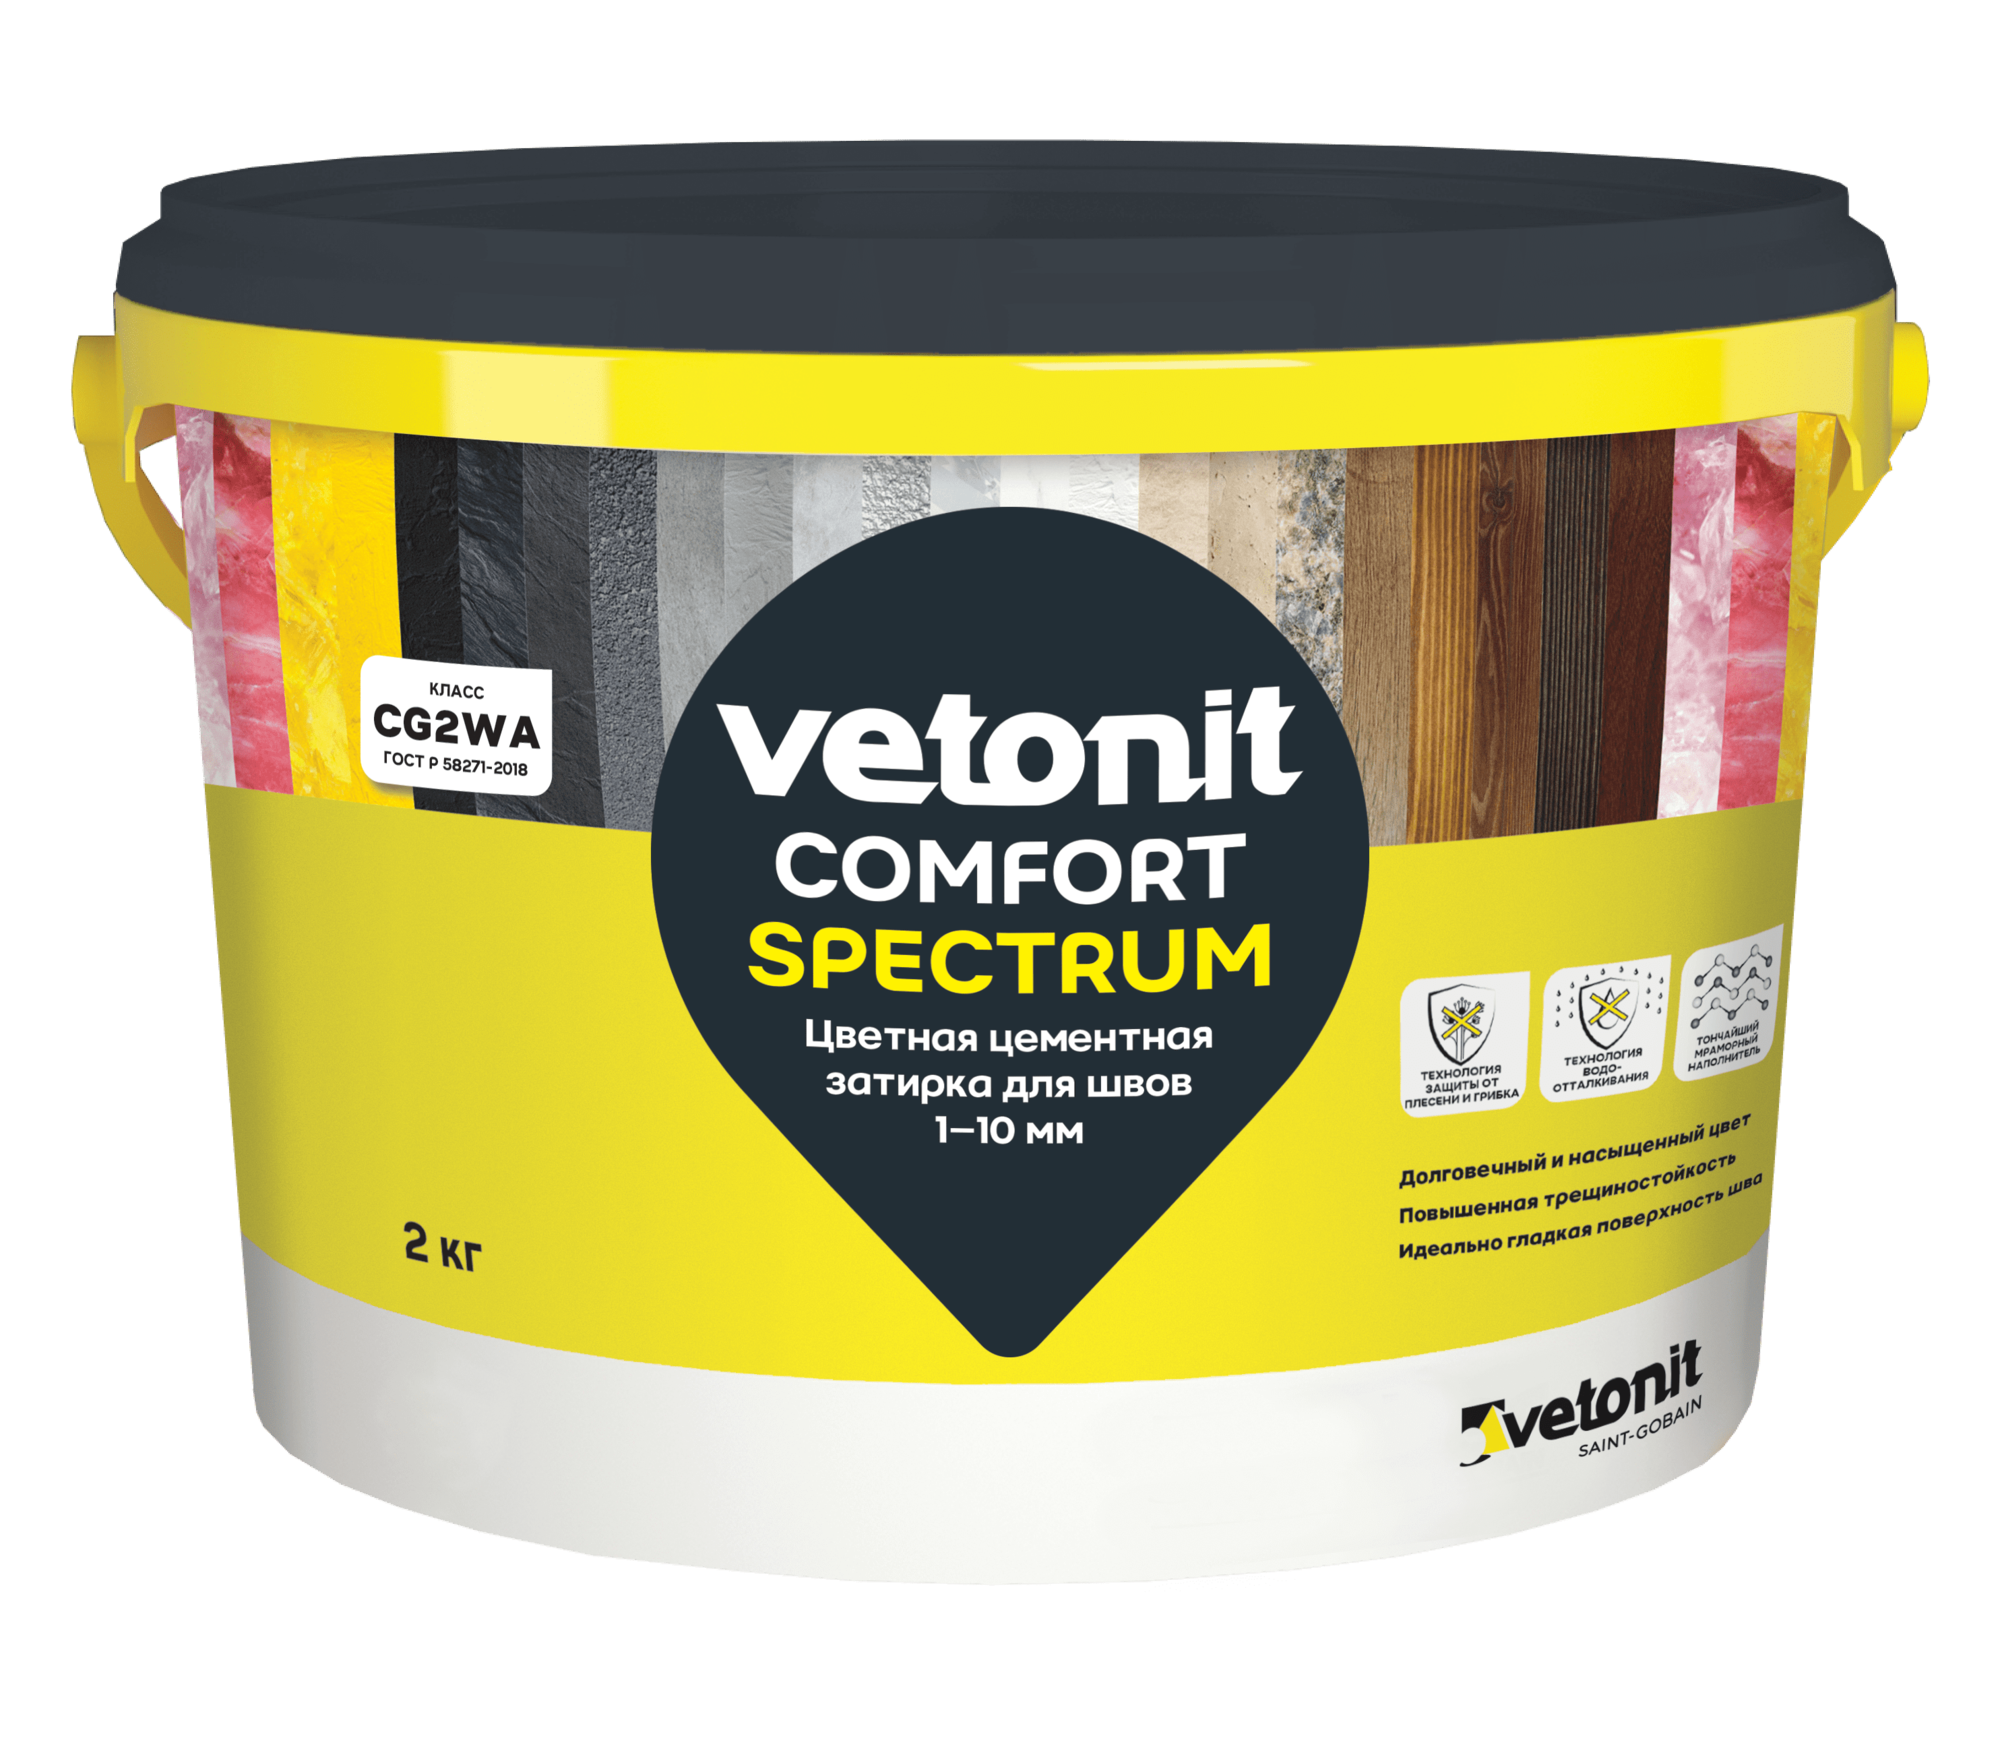 Цветная затирка для швов 1-10 мм Vetonit Comfort Spectrum